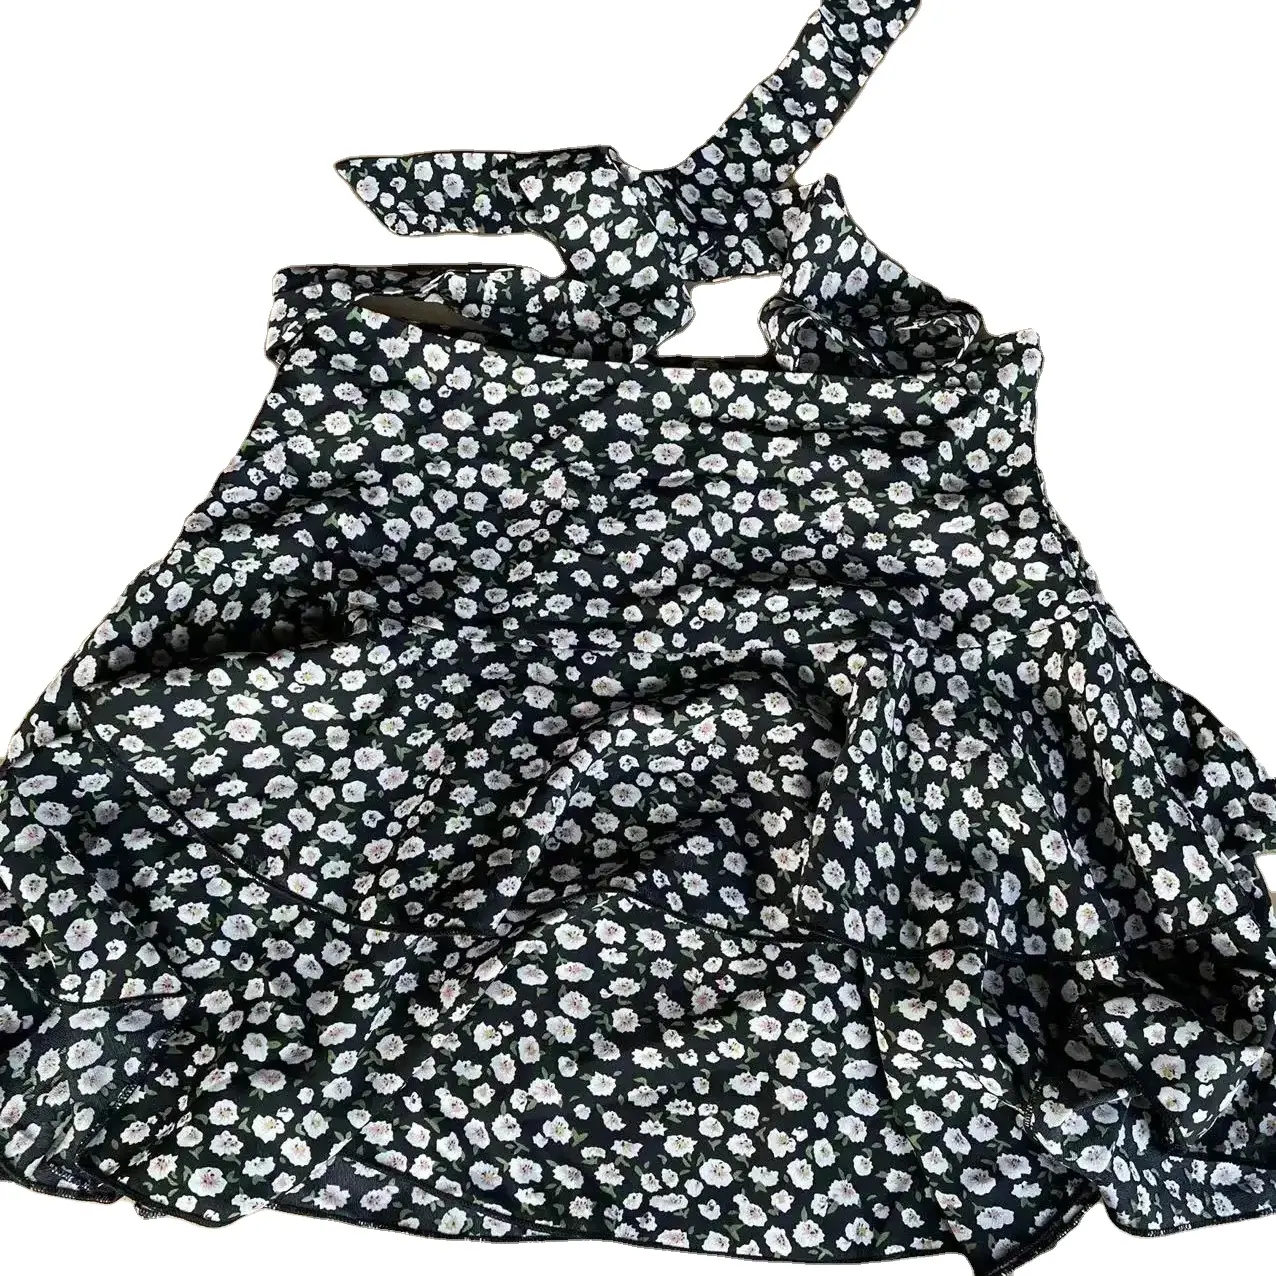 मैनिंग फैक्ट्री सीधे सबसे सस्ते स्टॉक कपड़े मिश्रित सेकेंड-हैंड ड्रेस टॉप फैशन टी-शर्ट की थोक बिक्री करती है